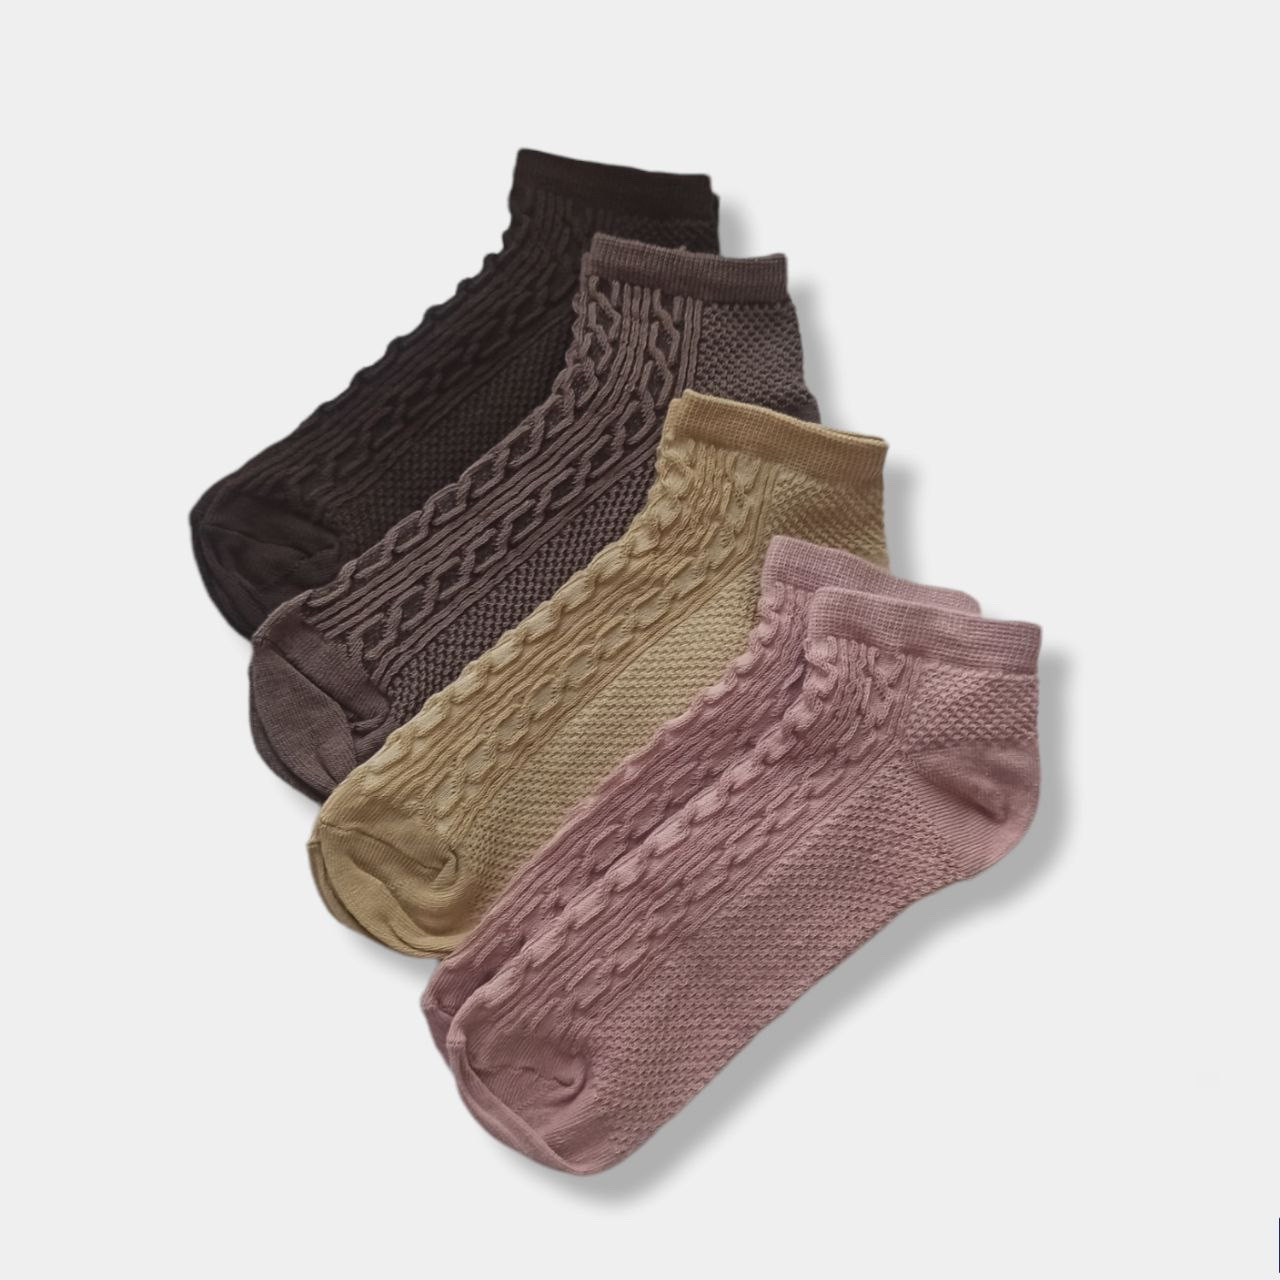 Шкарпетки жіночі | Жіночі шкарпетки 35-37, 36-39 | Шкарпетки жіночі коричневі, хакі, молочний